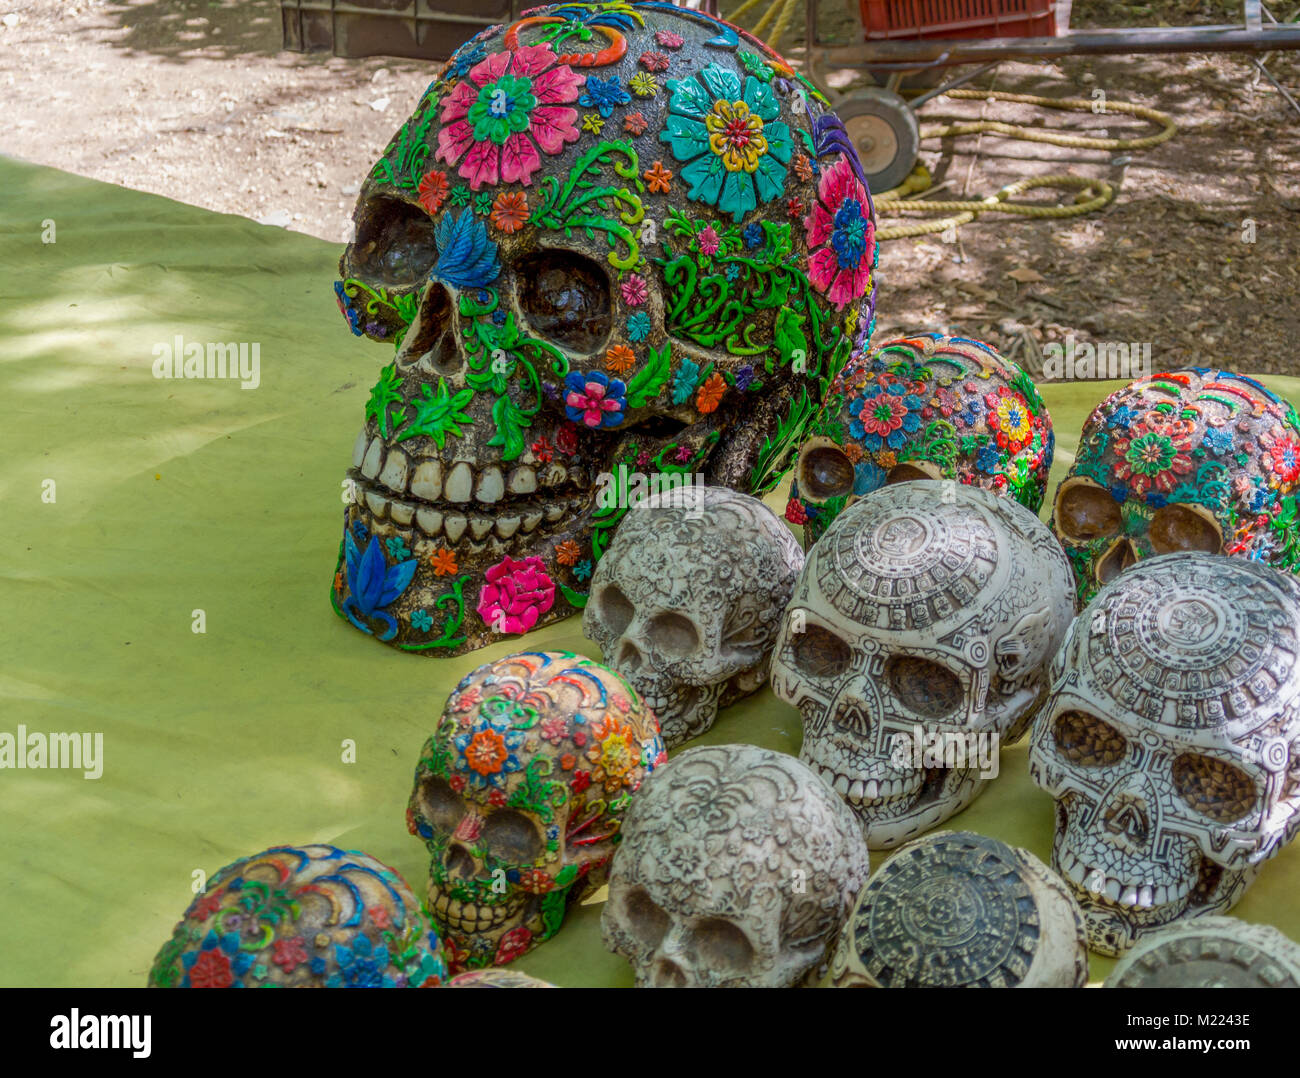 Chichén-Itzá, Yucatan, Mexiko, bunte Skelettfiguren, typisch mexikanische Kunst im Souvenirladen, nur redaktionell. Stockfoto